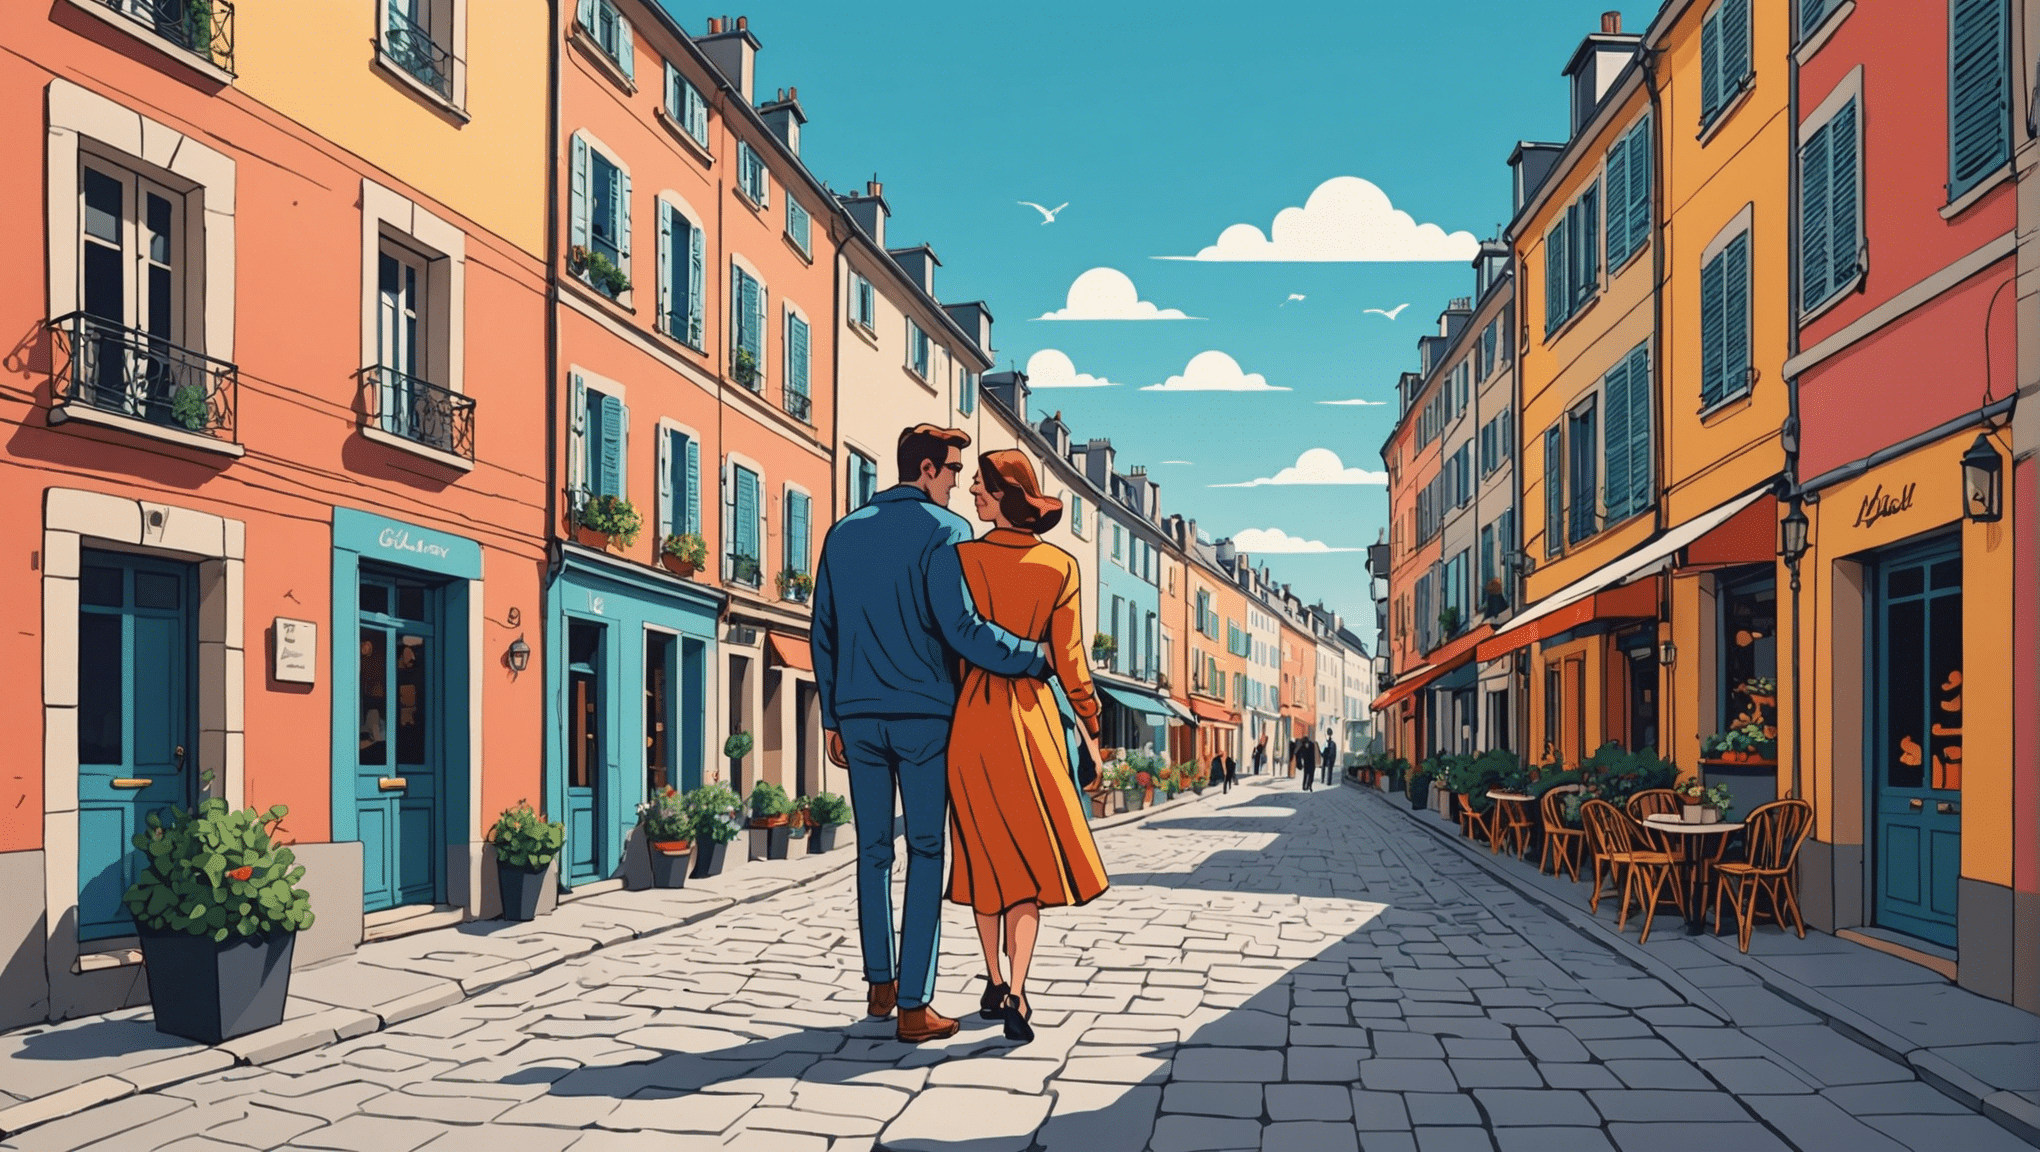 اكتشف أفضل الوجهات لقضاء عطلة نهاية أسبوع رومانسية في فرنسا، وأفكار للأماكن الرومانسية والأنشطة التي لا تنسى لقضاء عطلة مثالية لشخصين.